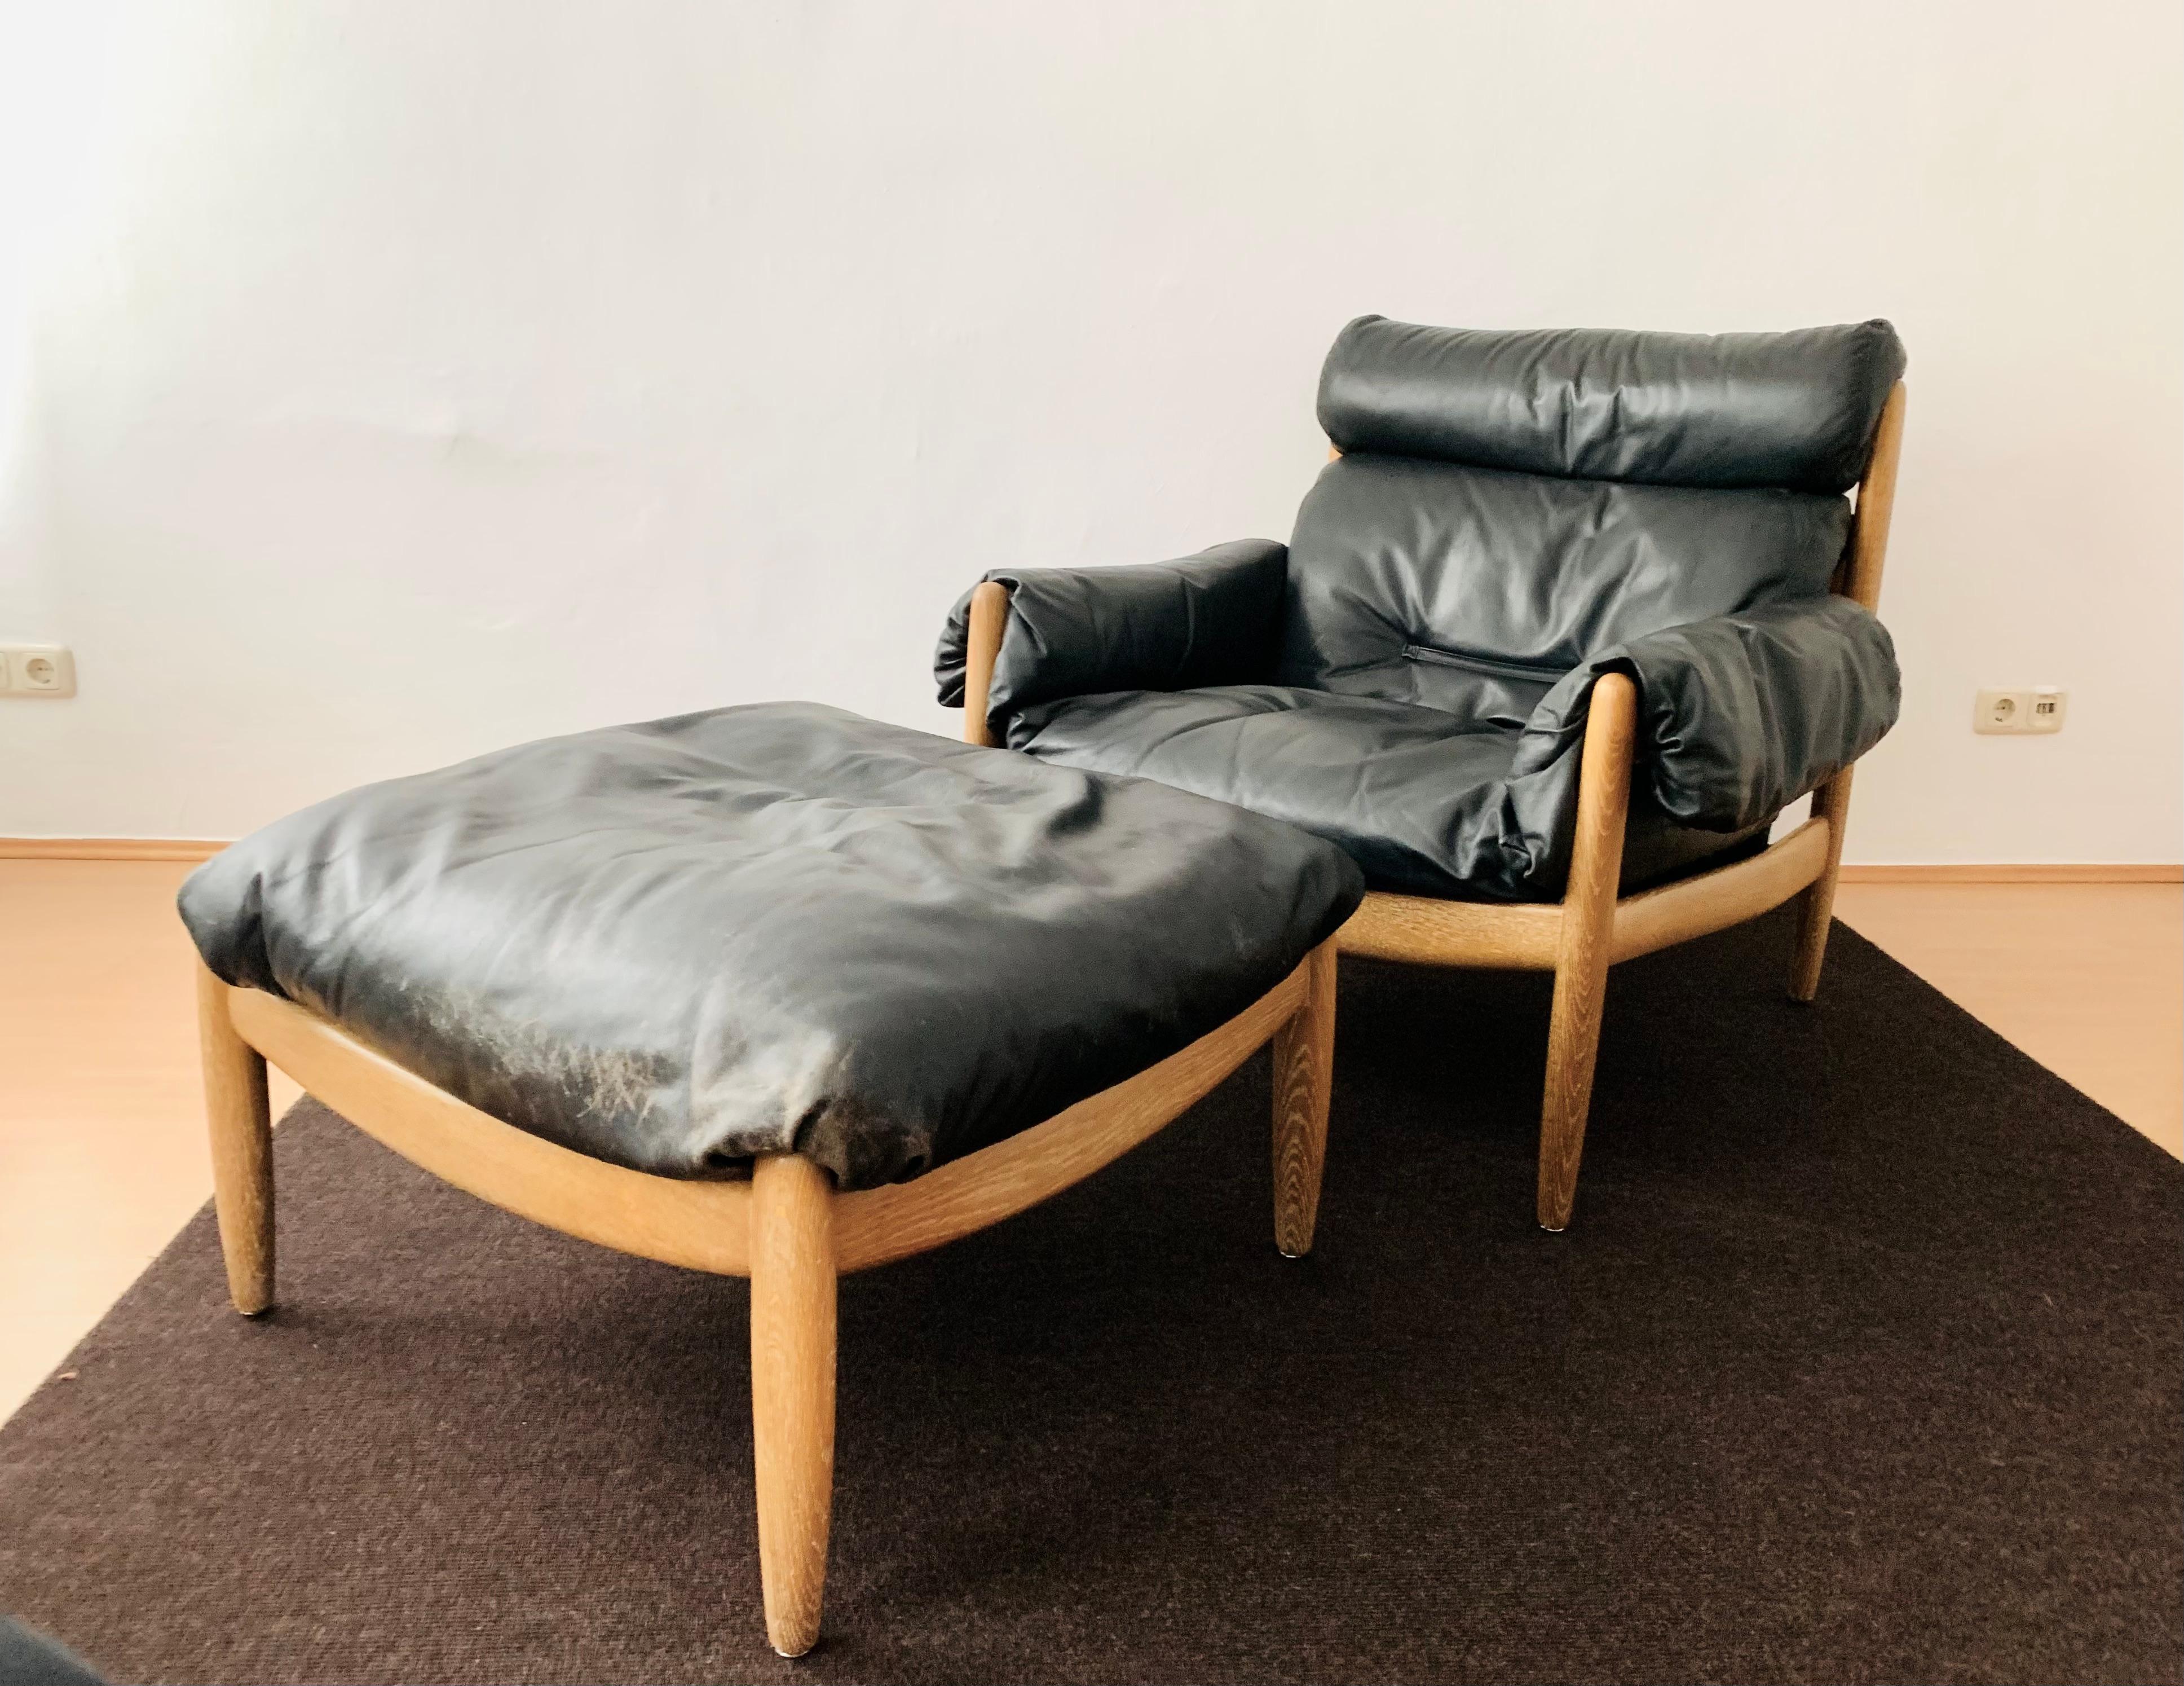 Merveilleux et très confortable fauteuil danois en cuir des années 1960.
Très beau design et fabrication de haute qualité.
Le cuir robuste et très souple assure une assise très confortable.
Un enrichissement pour chaque foyer.
Le cadre en chêne est